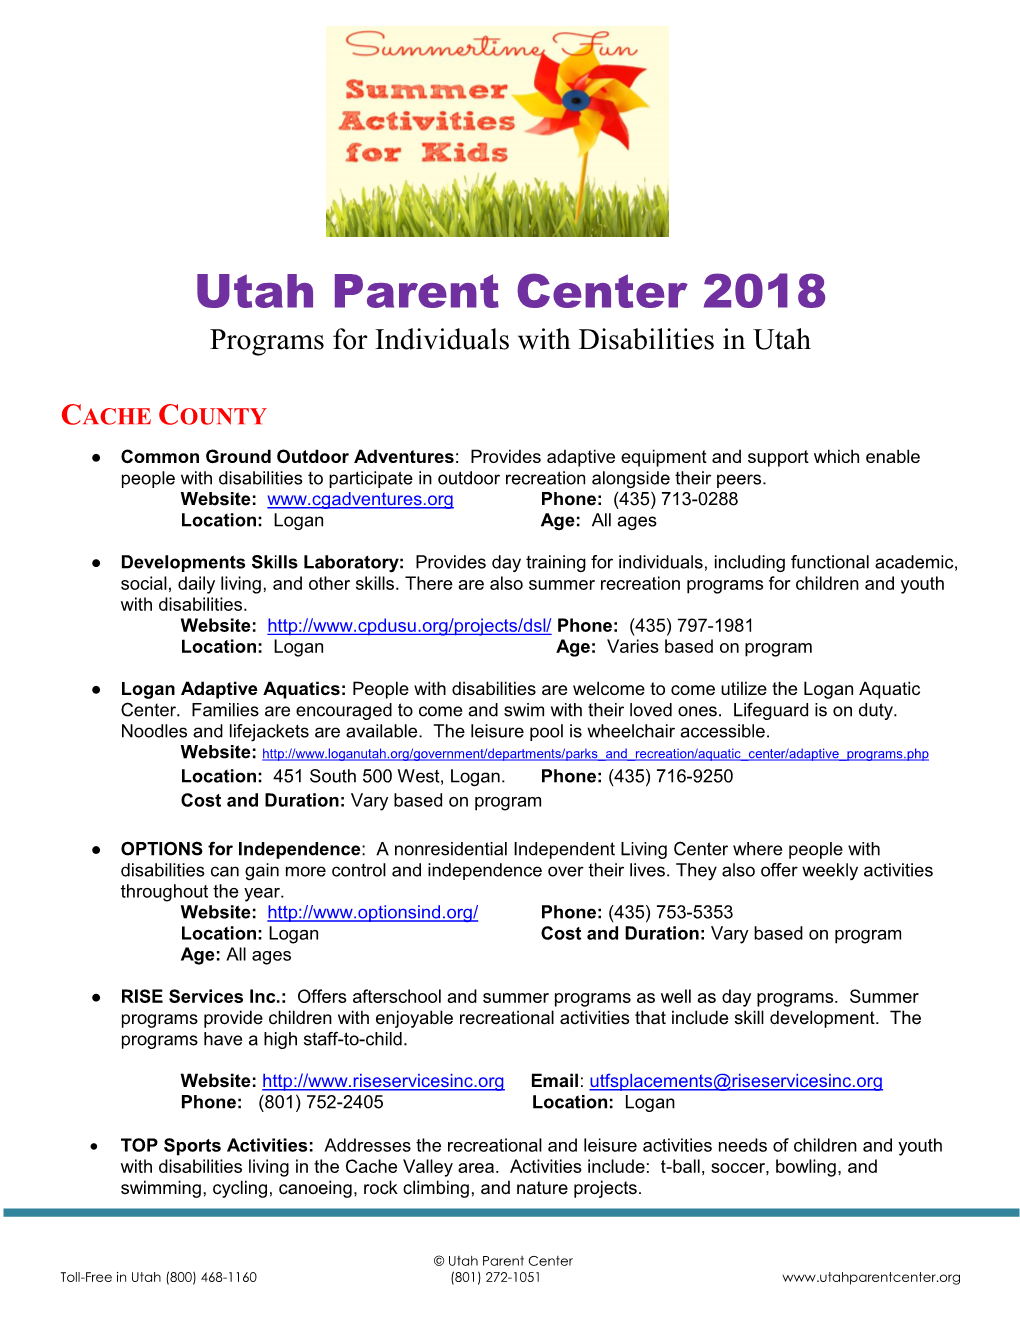 Utah Parent Center 2018 Programs for Individuals with Disabilities in Utah